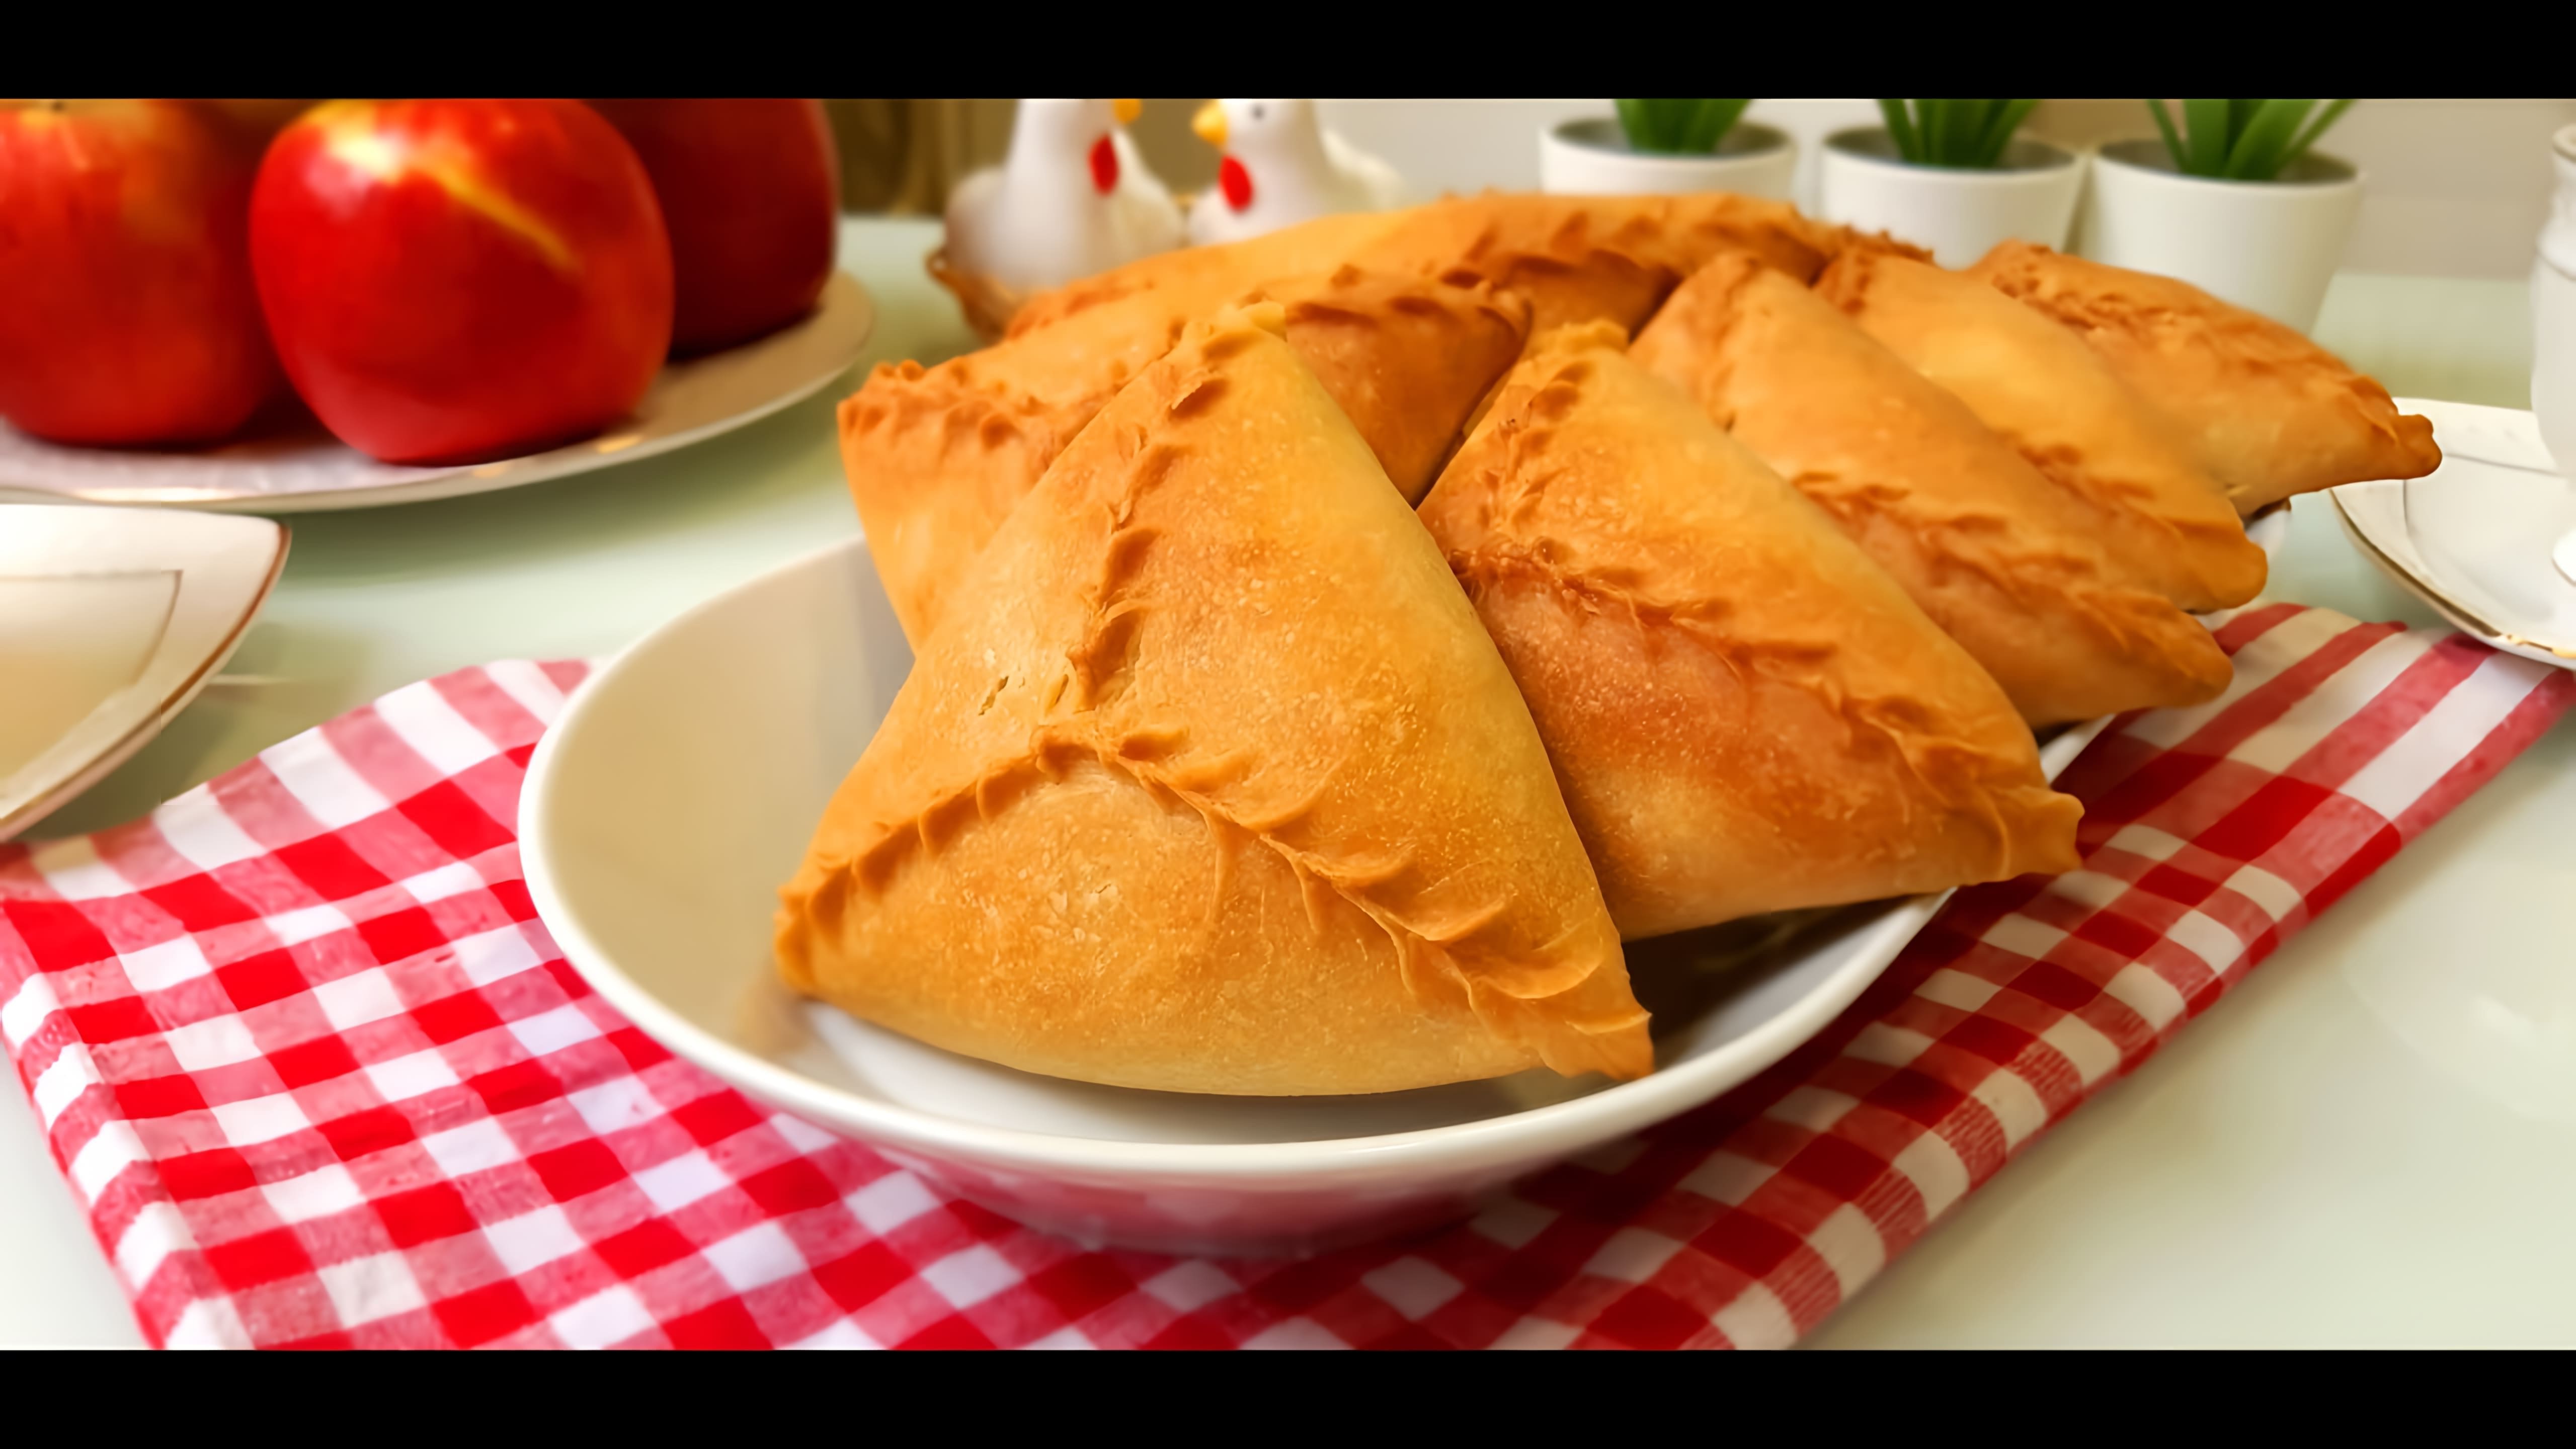 В этом видео-ролике вы увидите, как приготовить треугольники с мясом и картофелем на бездрожжевом тесте, которые являются популярным блюдом татарской кухни и называются эчпочмак